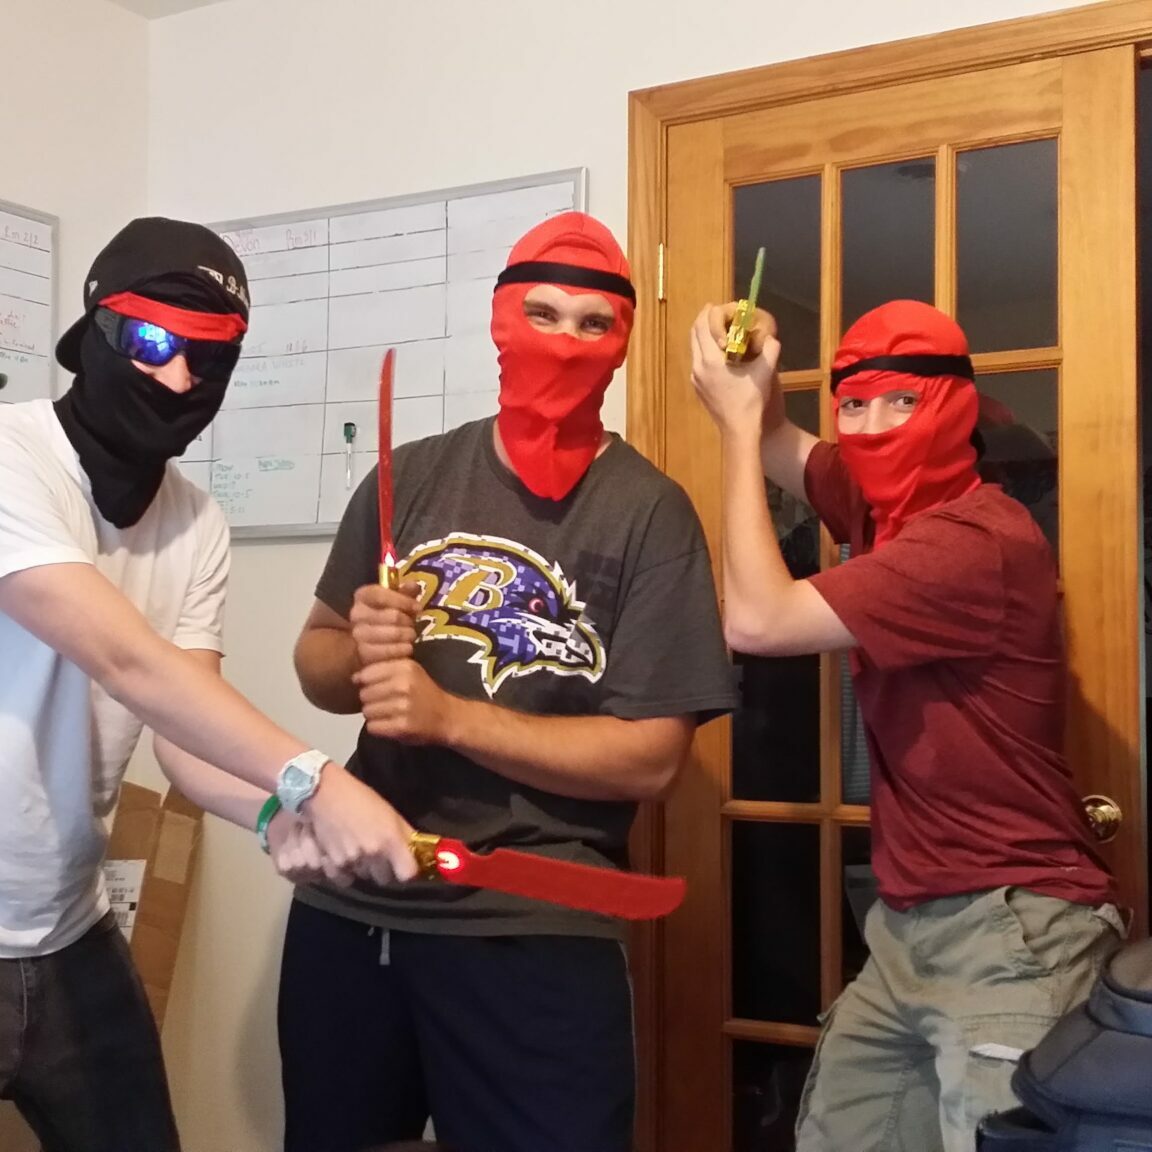 Our Guys dressed as ninjas